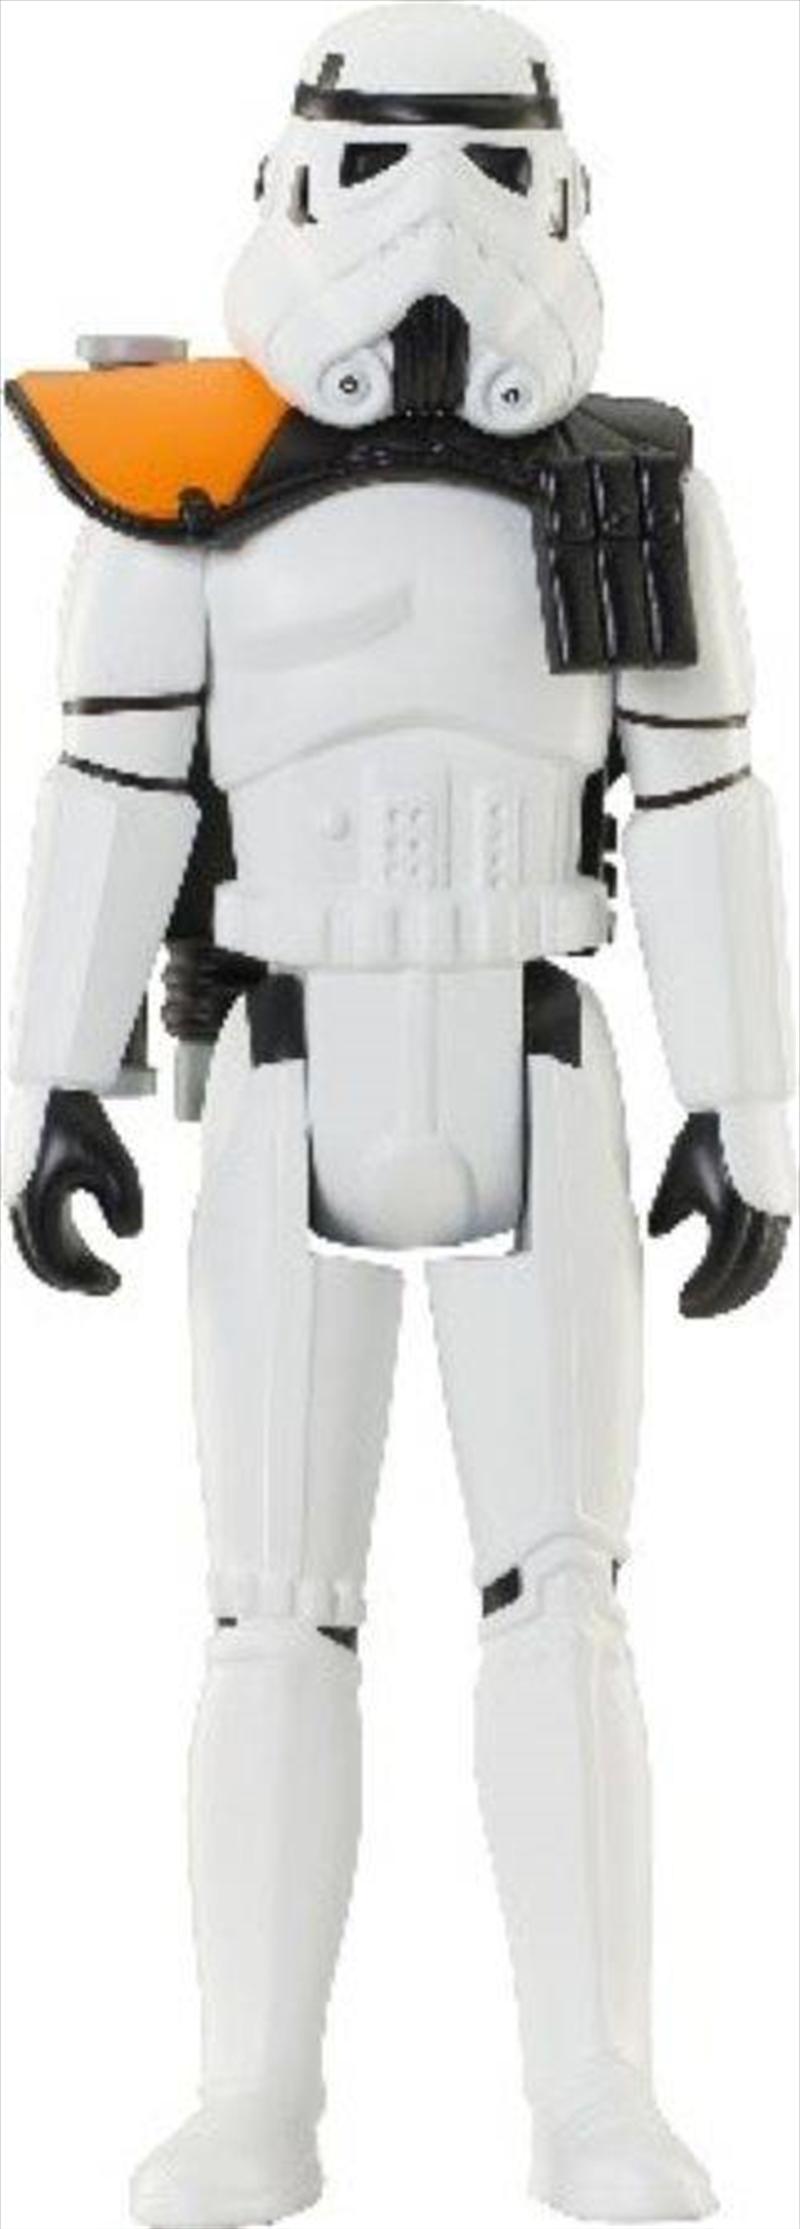 Star Wars - Sandtrooper Jumbo Figure/Product Detail/Figurines